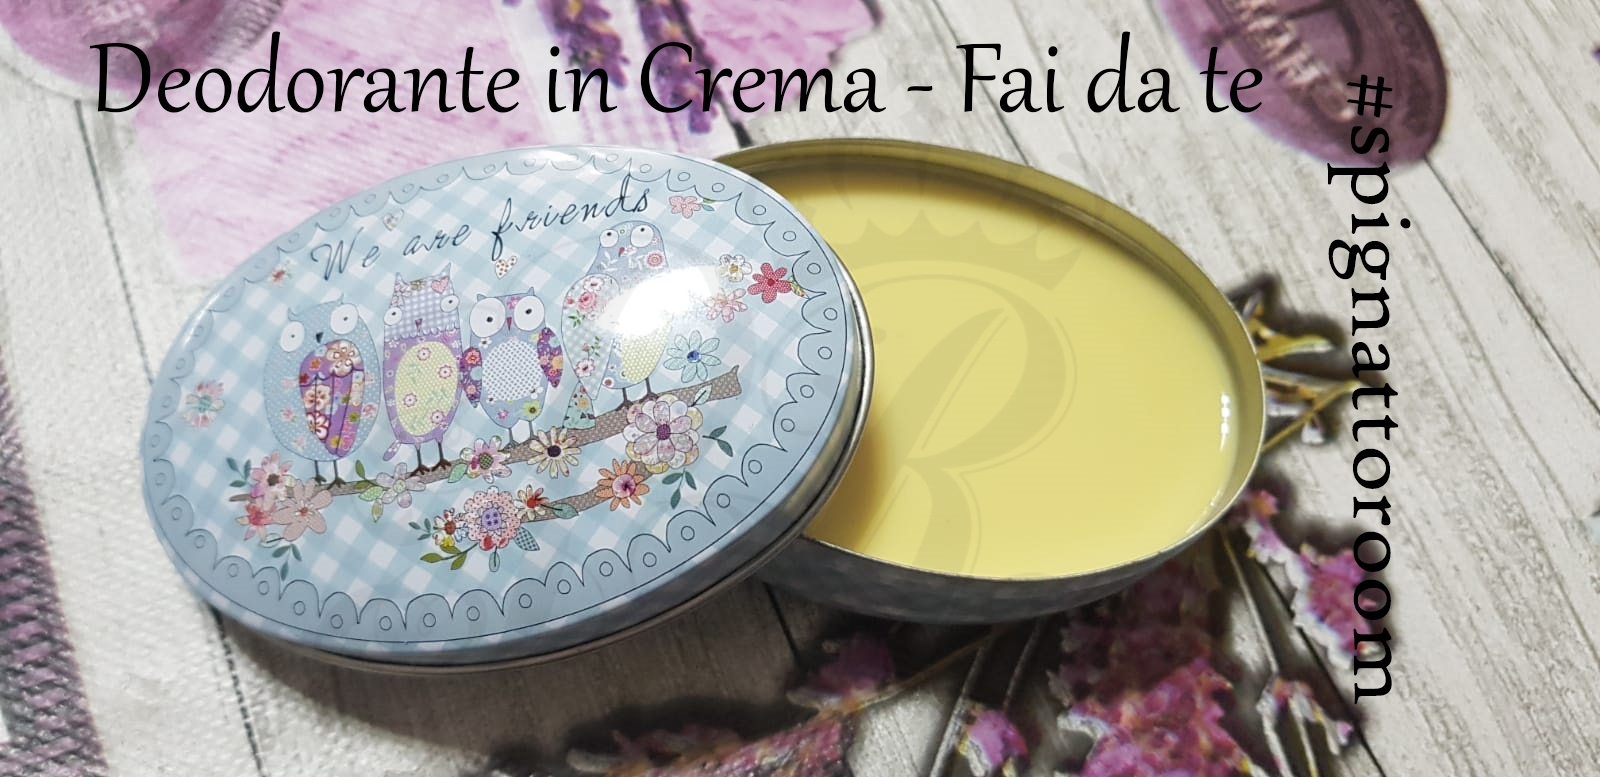 Deodorante In Crema Fai Da Te Official Progetto Rapunzel